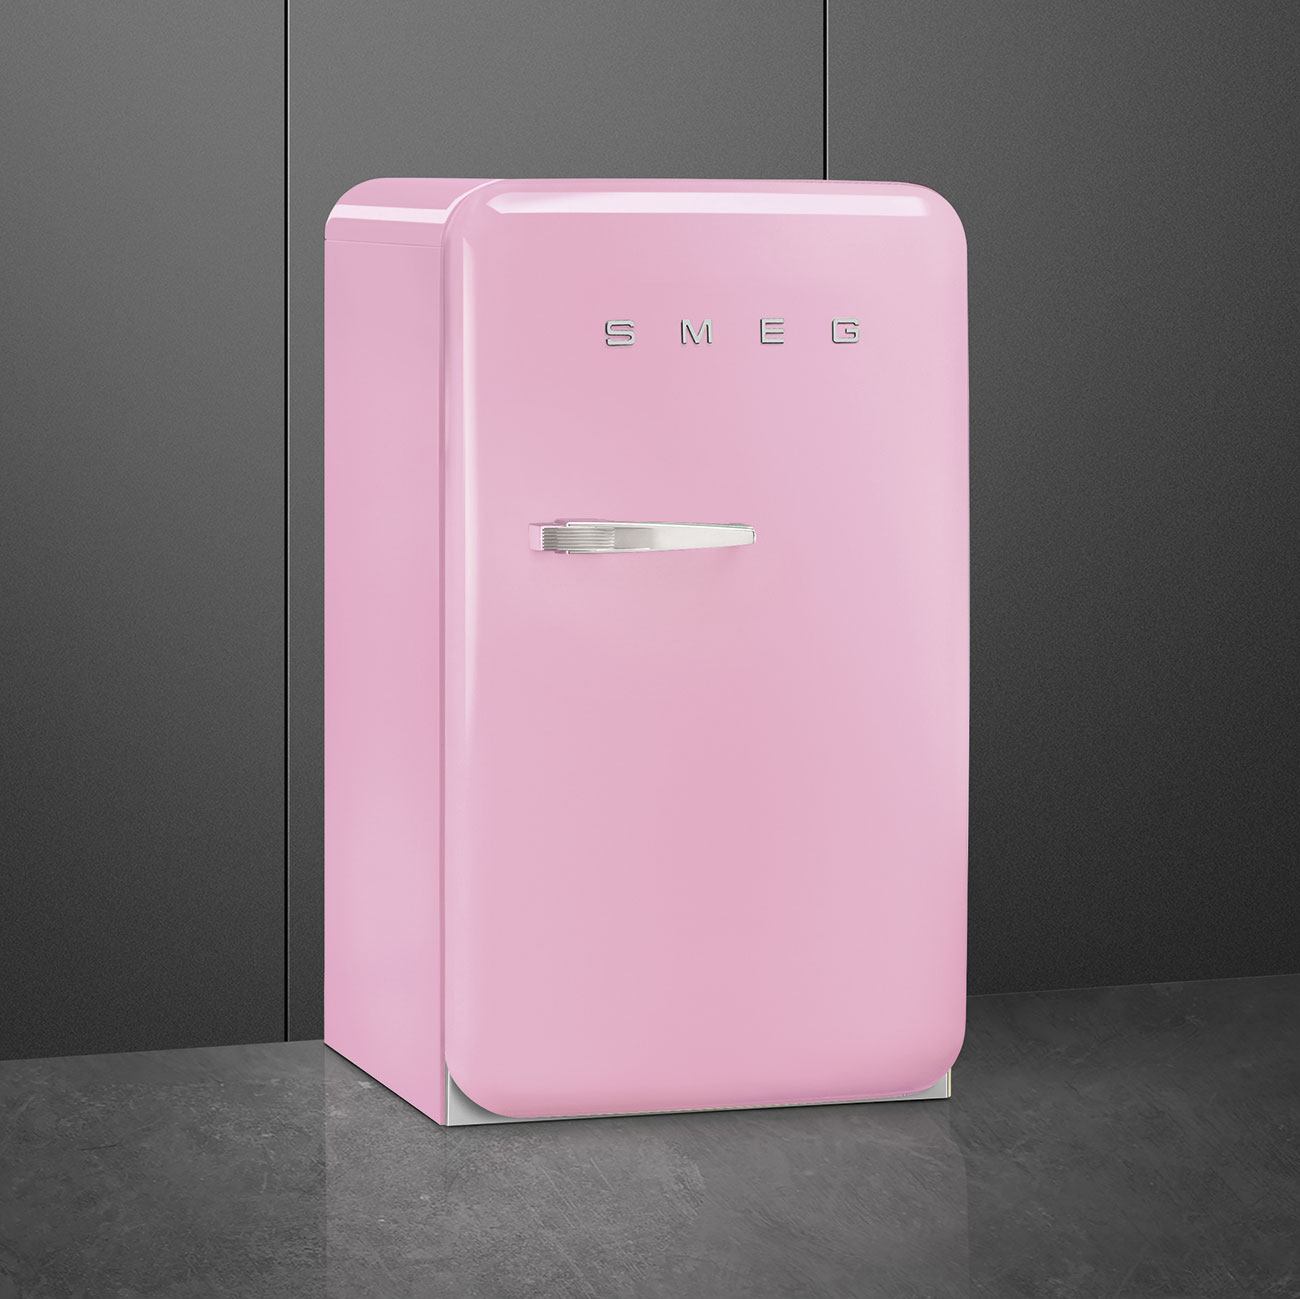 Pink refrigerator - Smeg_3